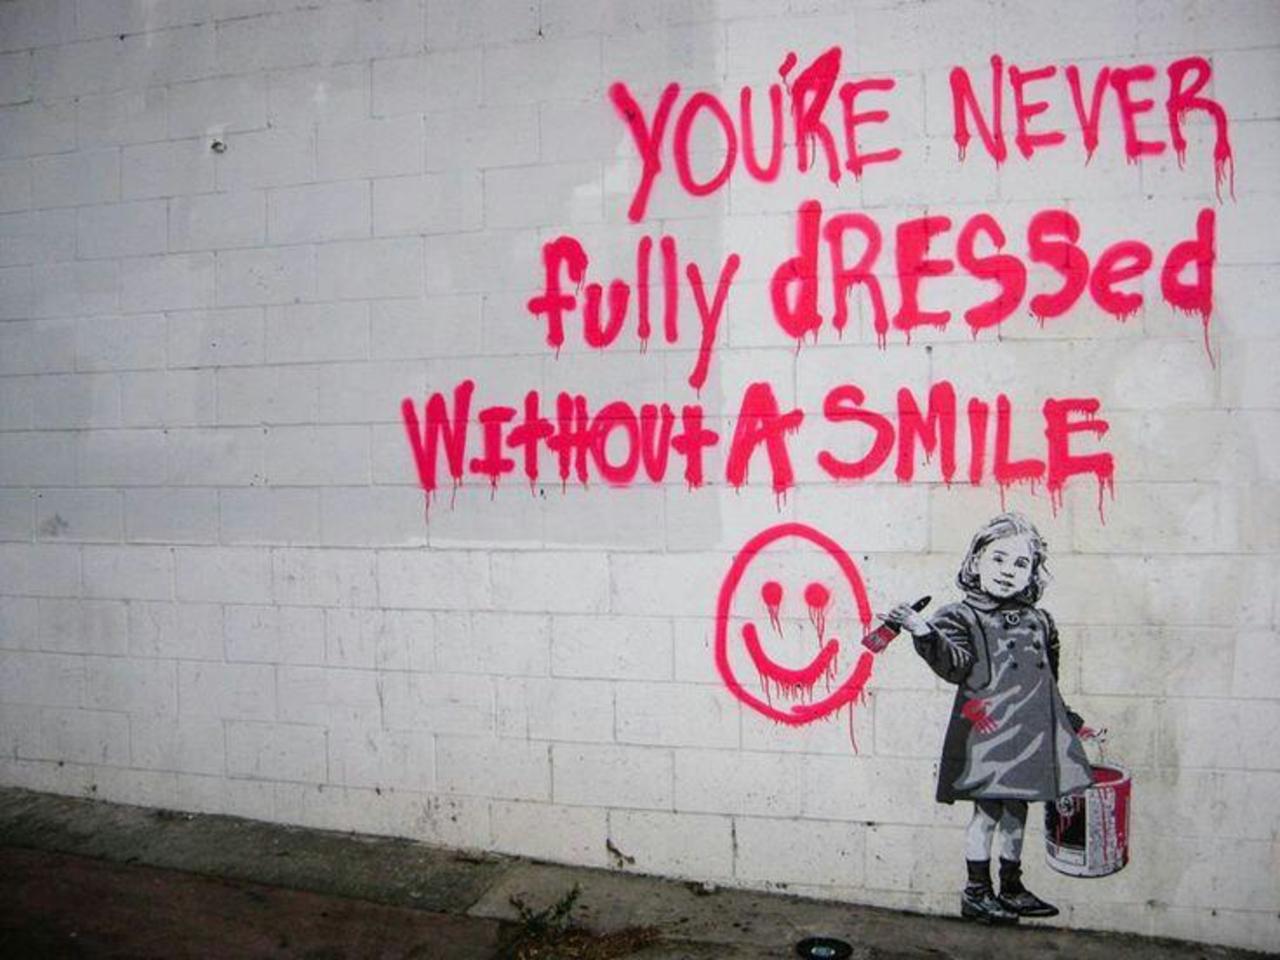 RT @hypatia373: #art #streetart #graffiti http://t.co/tCFs3qSIZ8